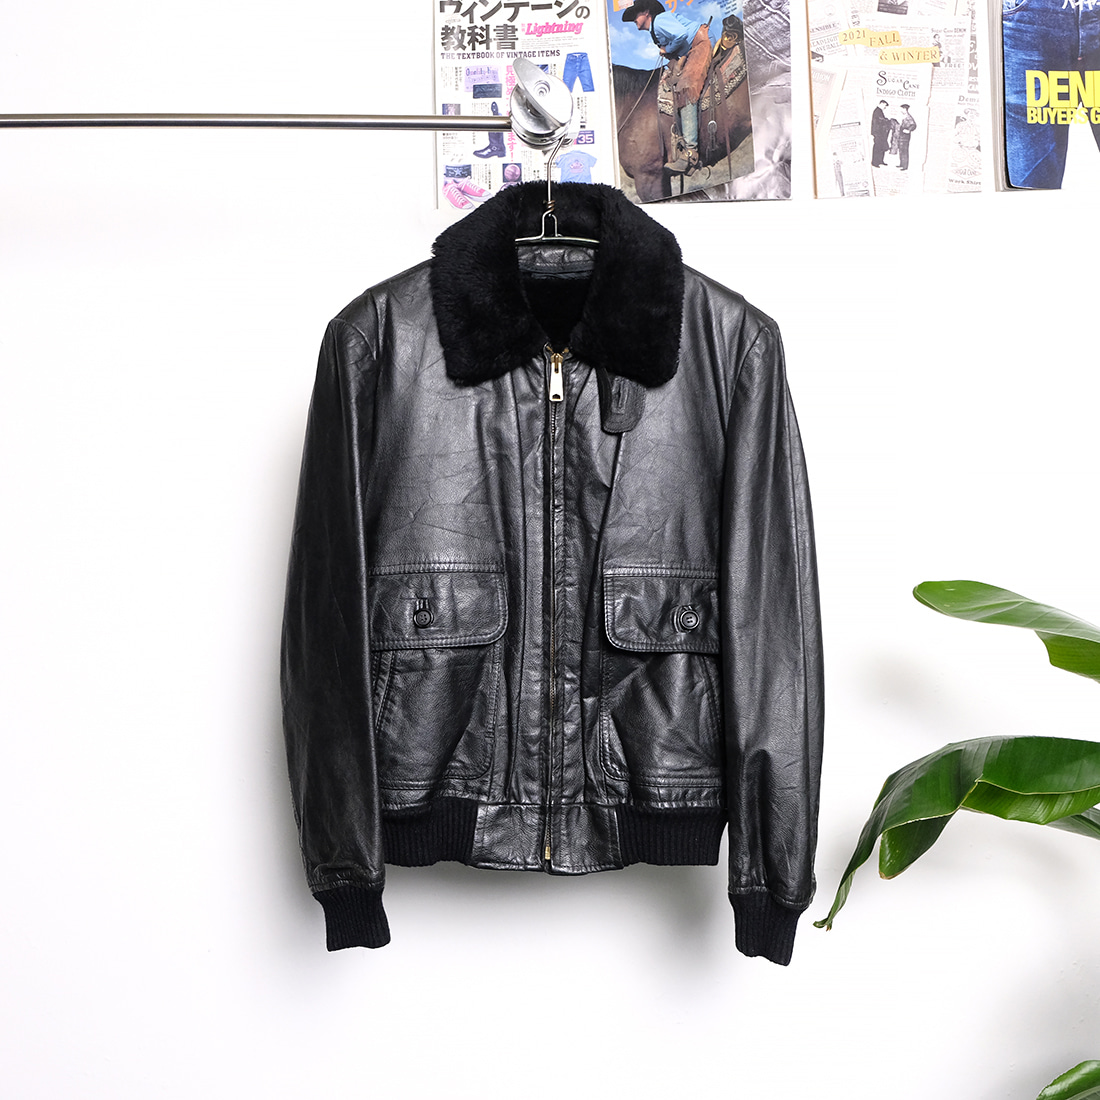 헤르 호덴  Herr horten 8-90s vintage leather jacket